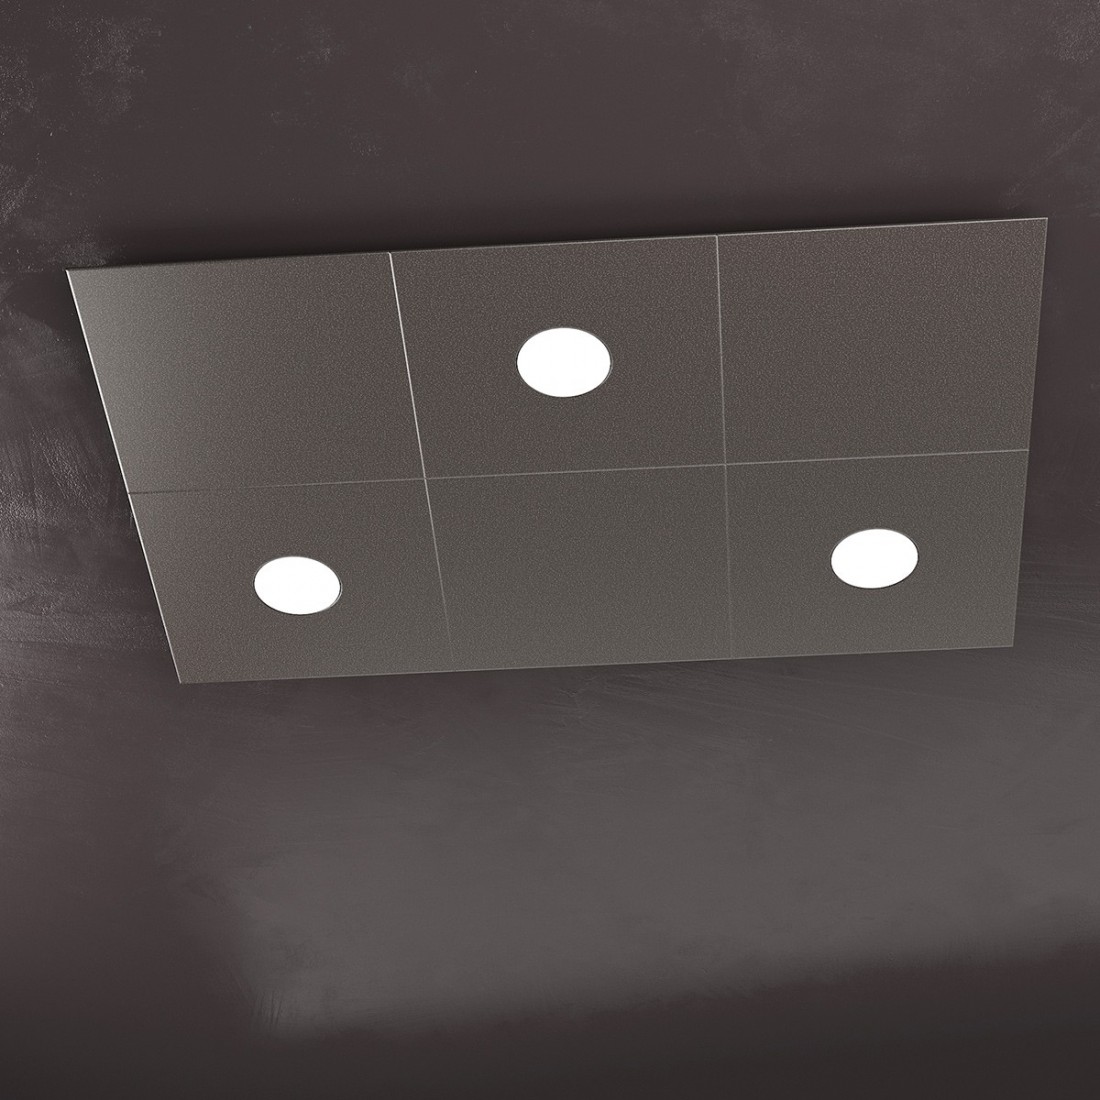 Plafoniera TP-ECCENTRIC 1156 3L3D GX53 LED metallo quadrato lampada parete soffitto decorativa moderna interno